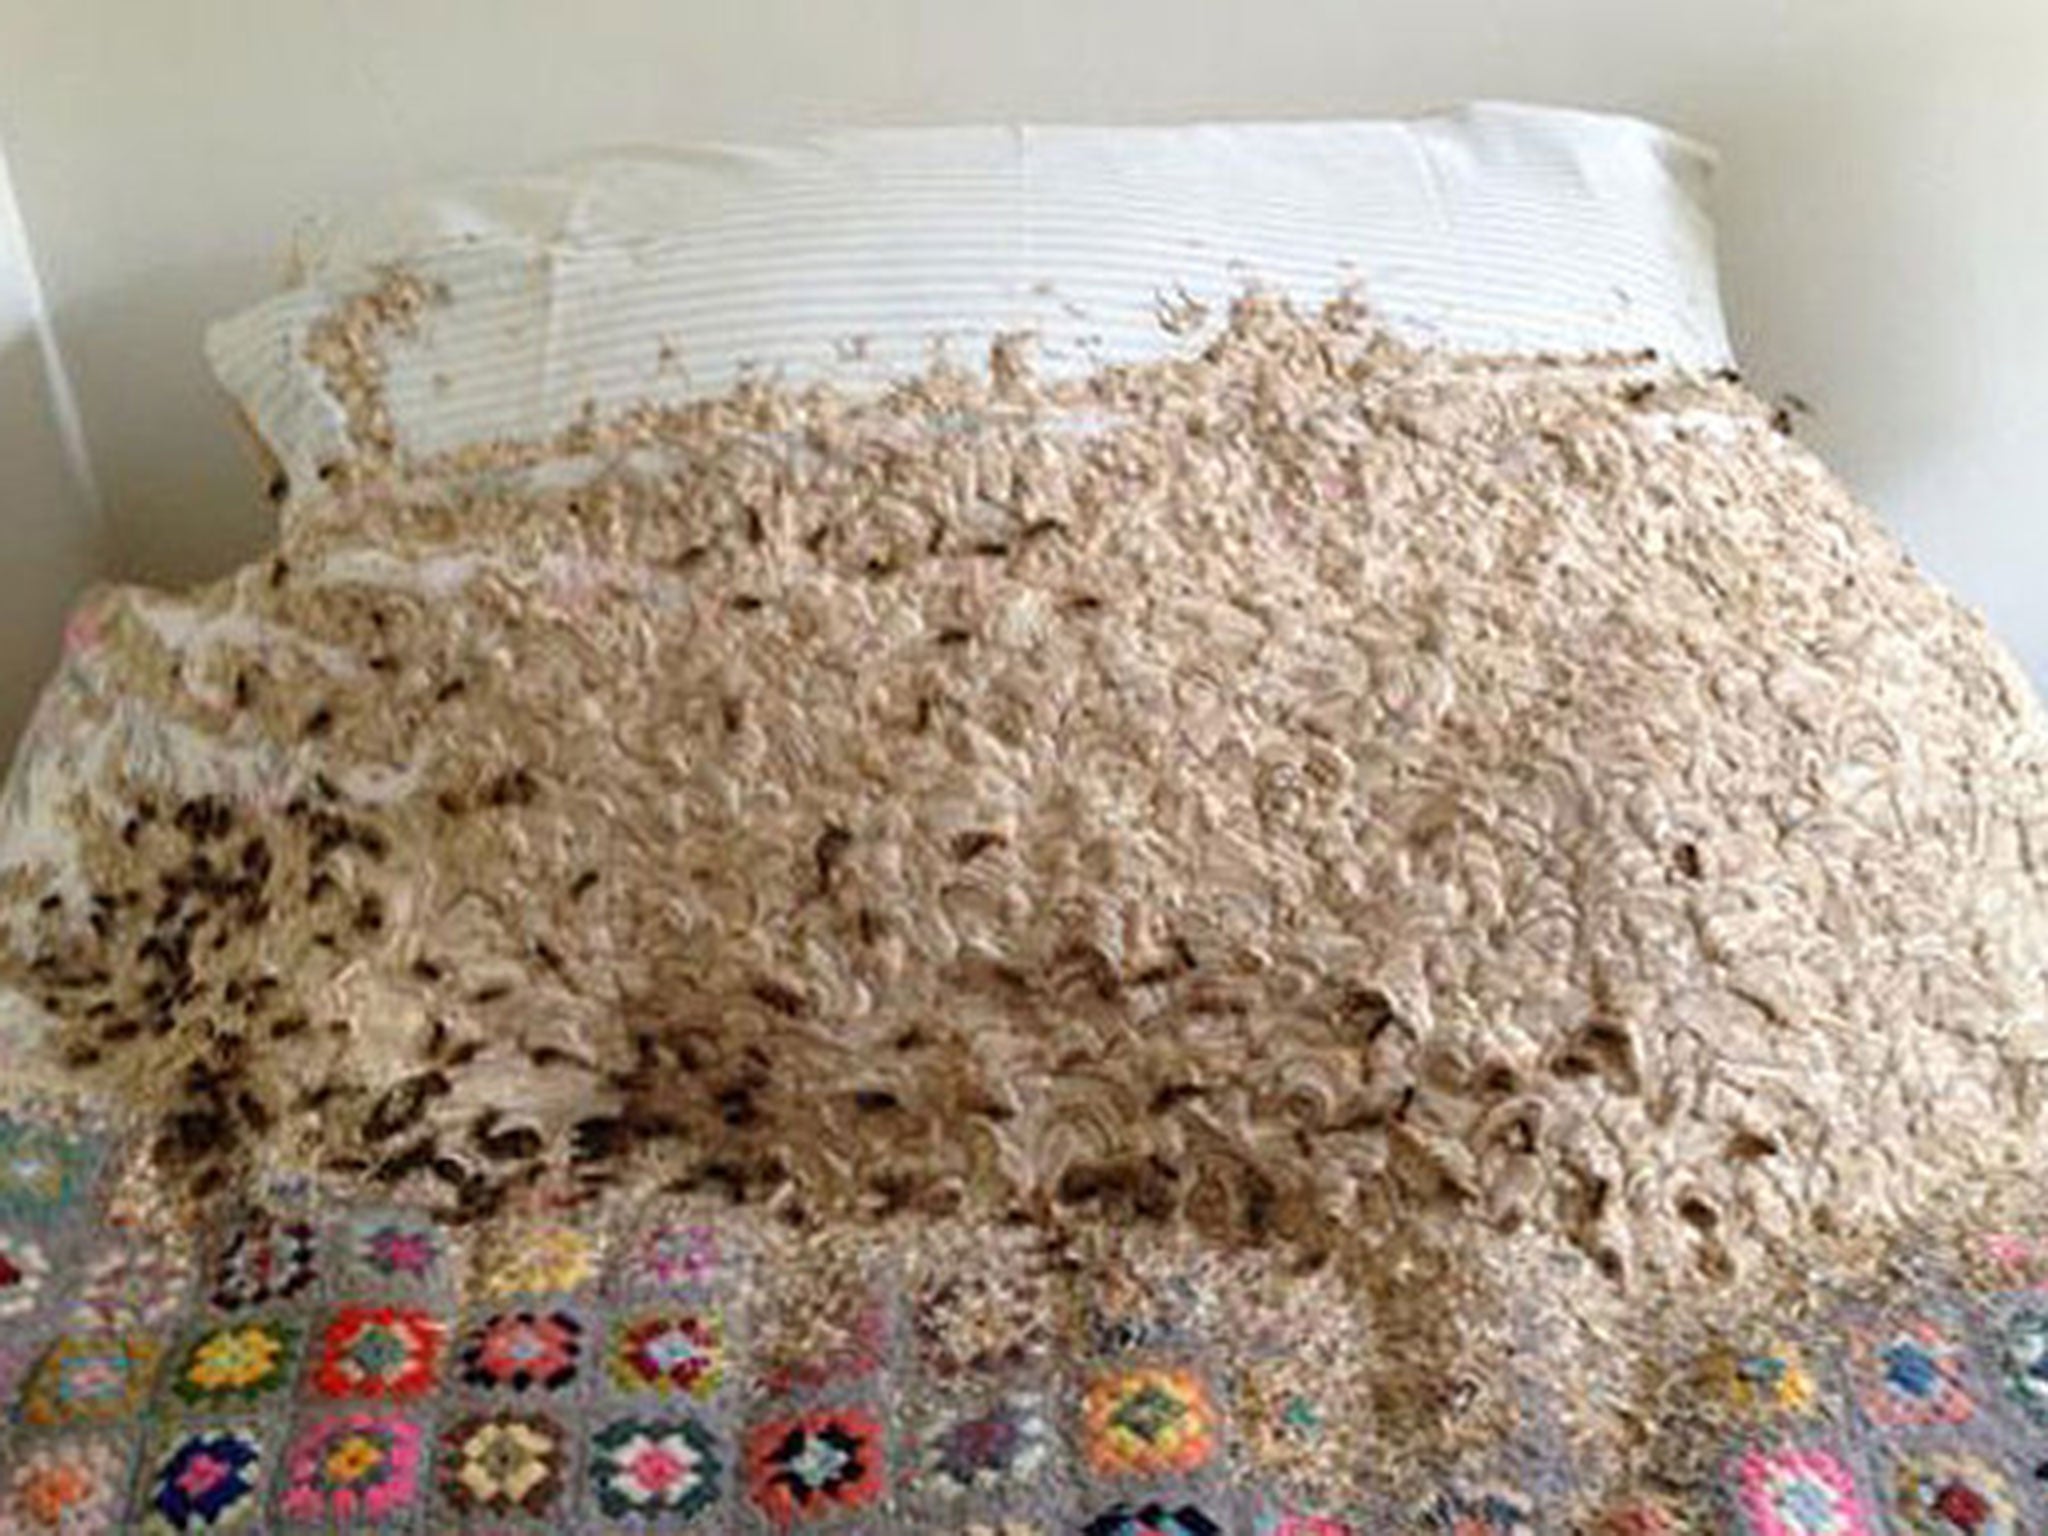 bed bug nest in mattress